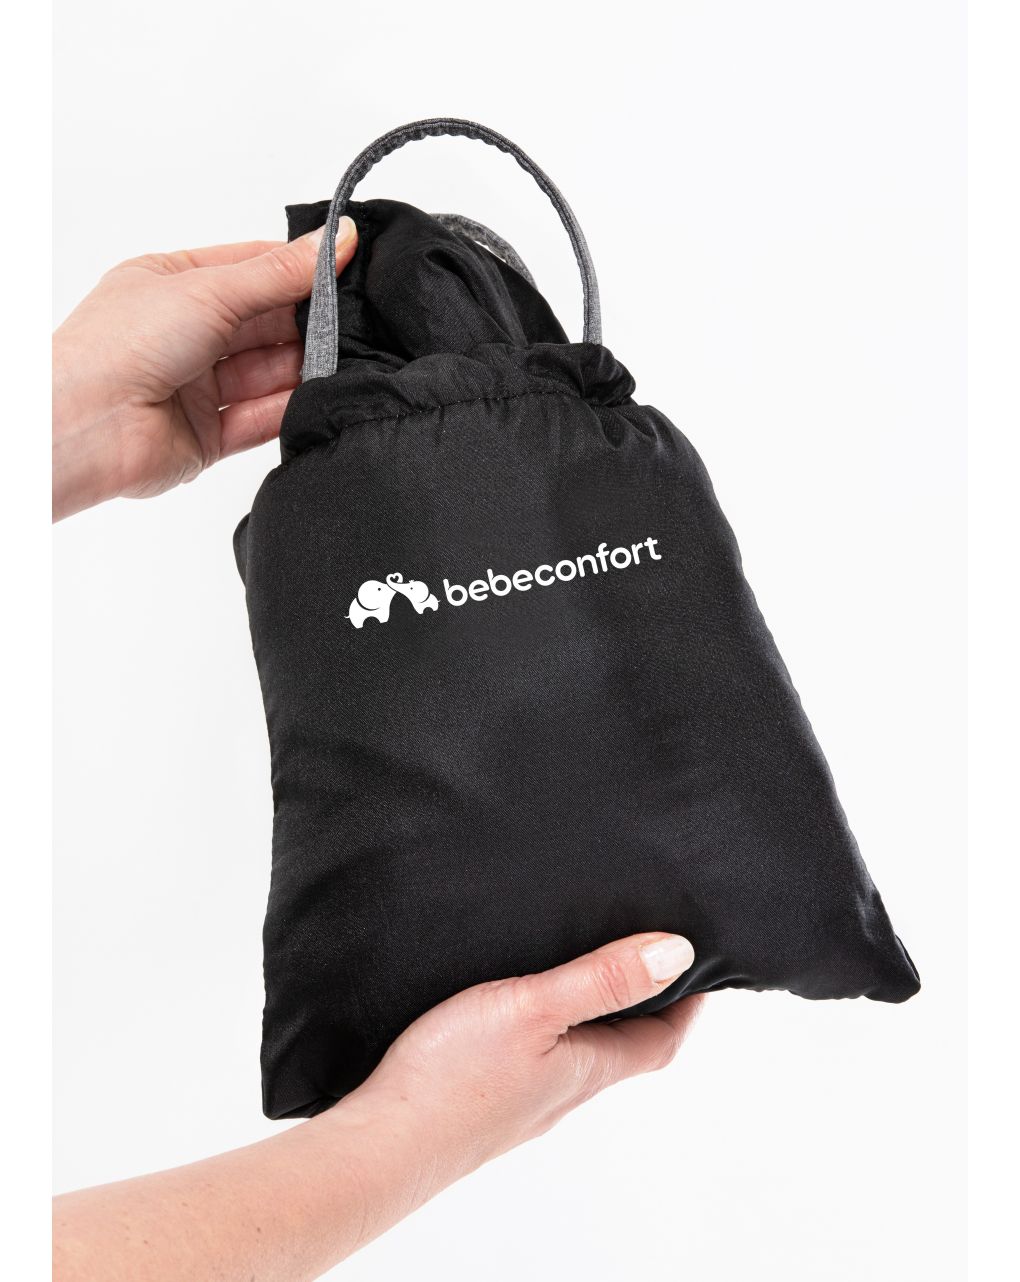 Bebeconfort - protector carro de compras black chic - Bébé Confort